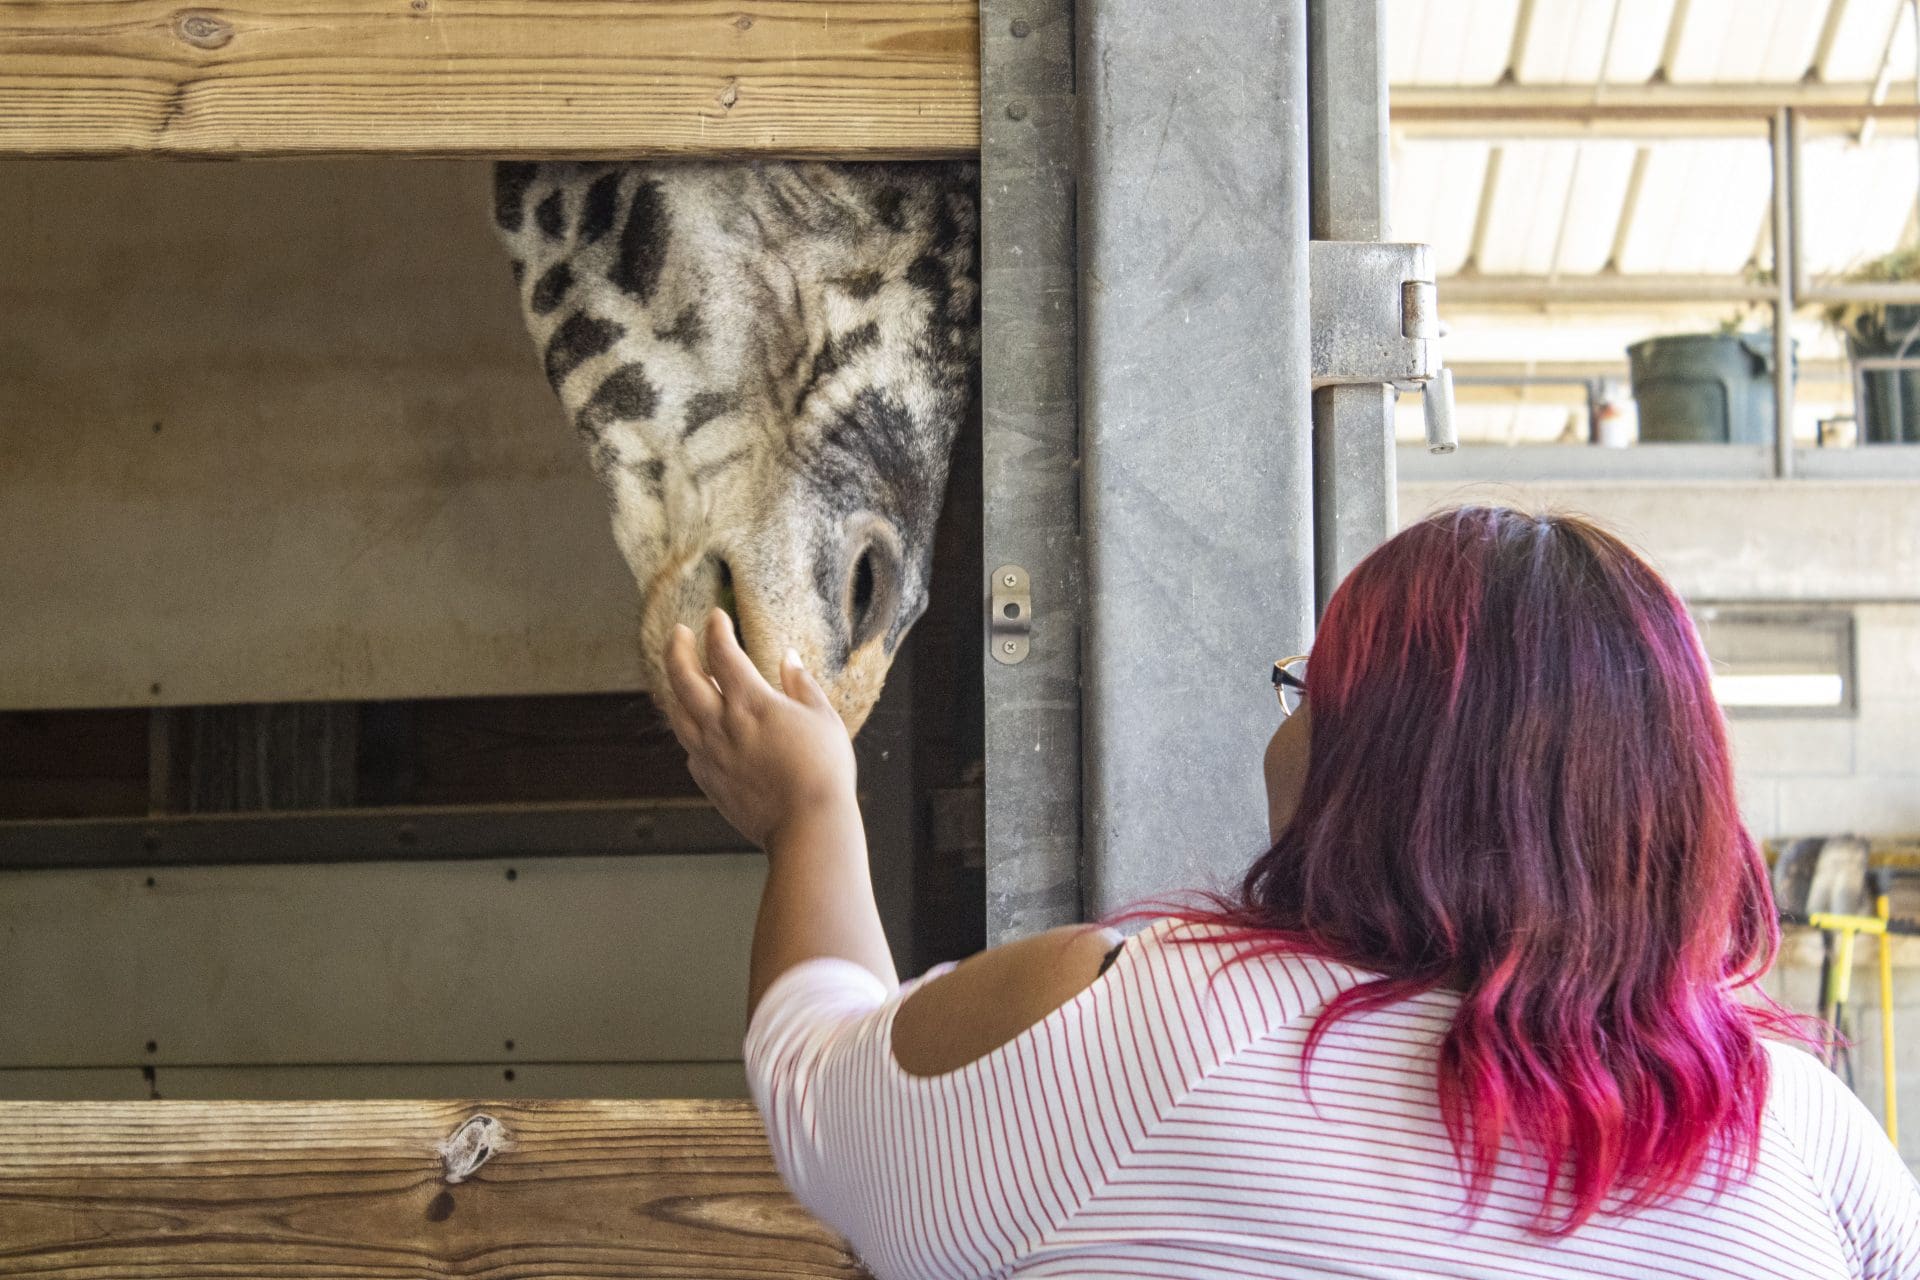 A woman feeds a giraffe.